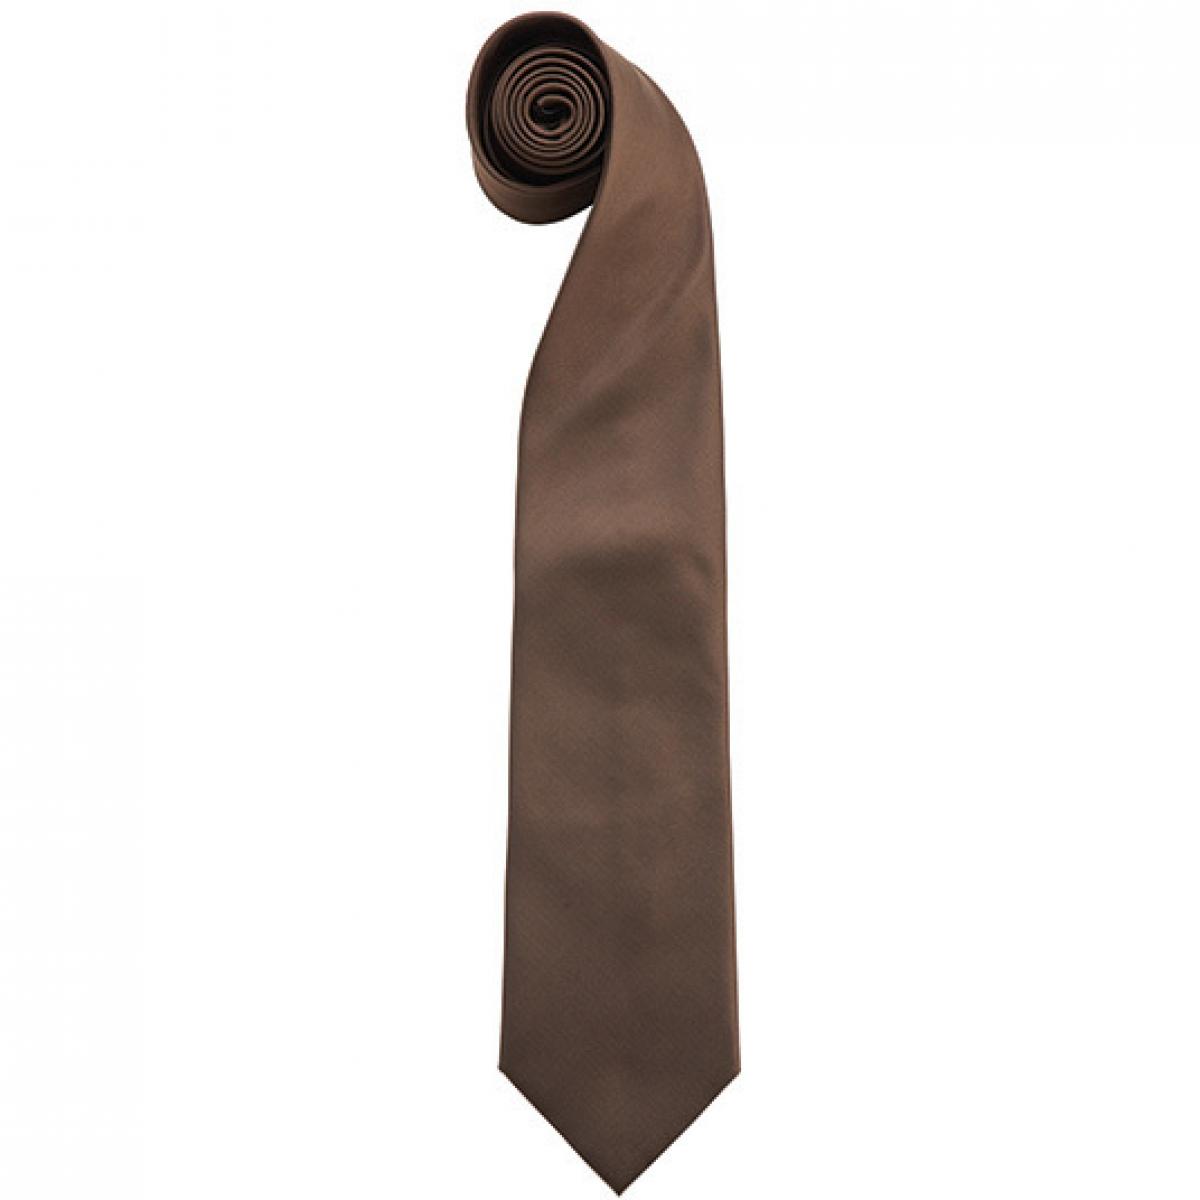 Hersteller: Premier Workwear Herstellernummer: PR765 Artikelbezeichnung: Krawatte Uni-Fashion / Colours Farbe: Brown (ca. Pantone 476C)